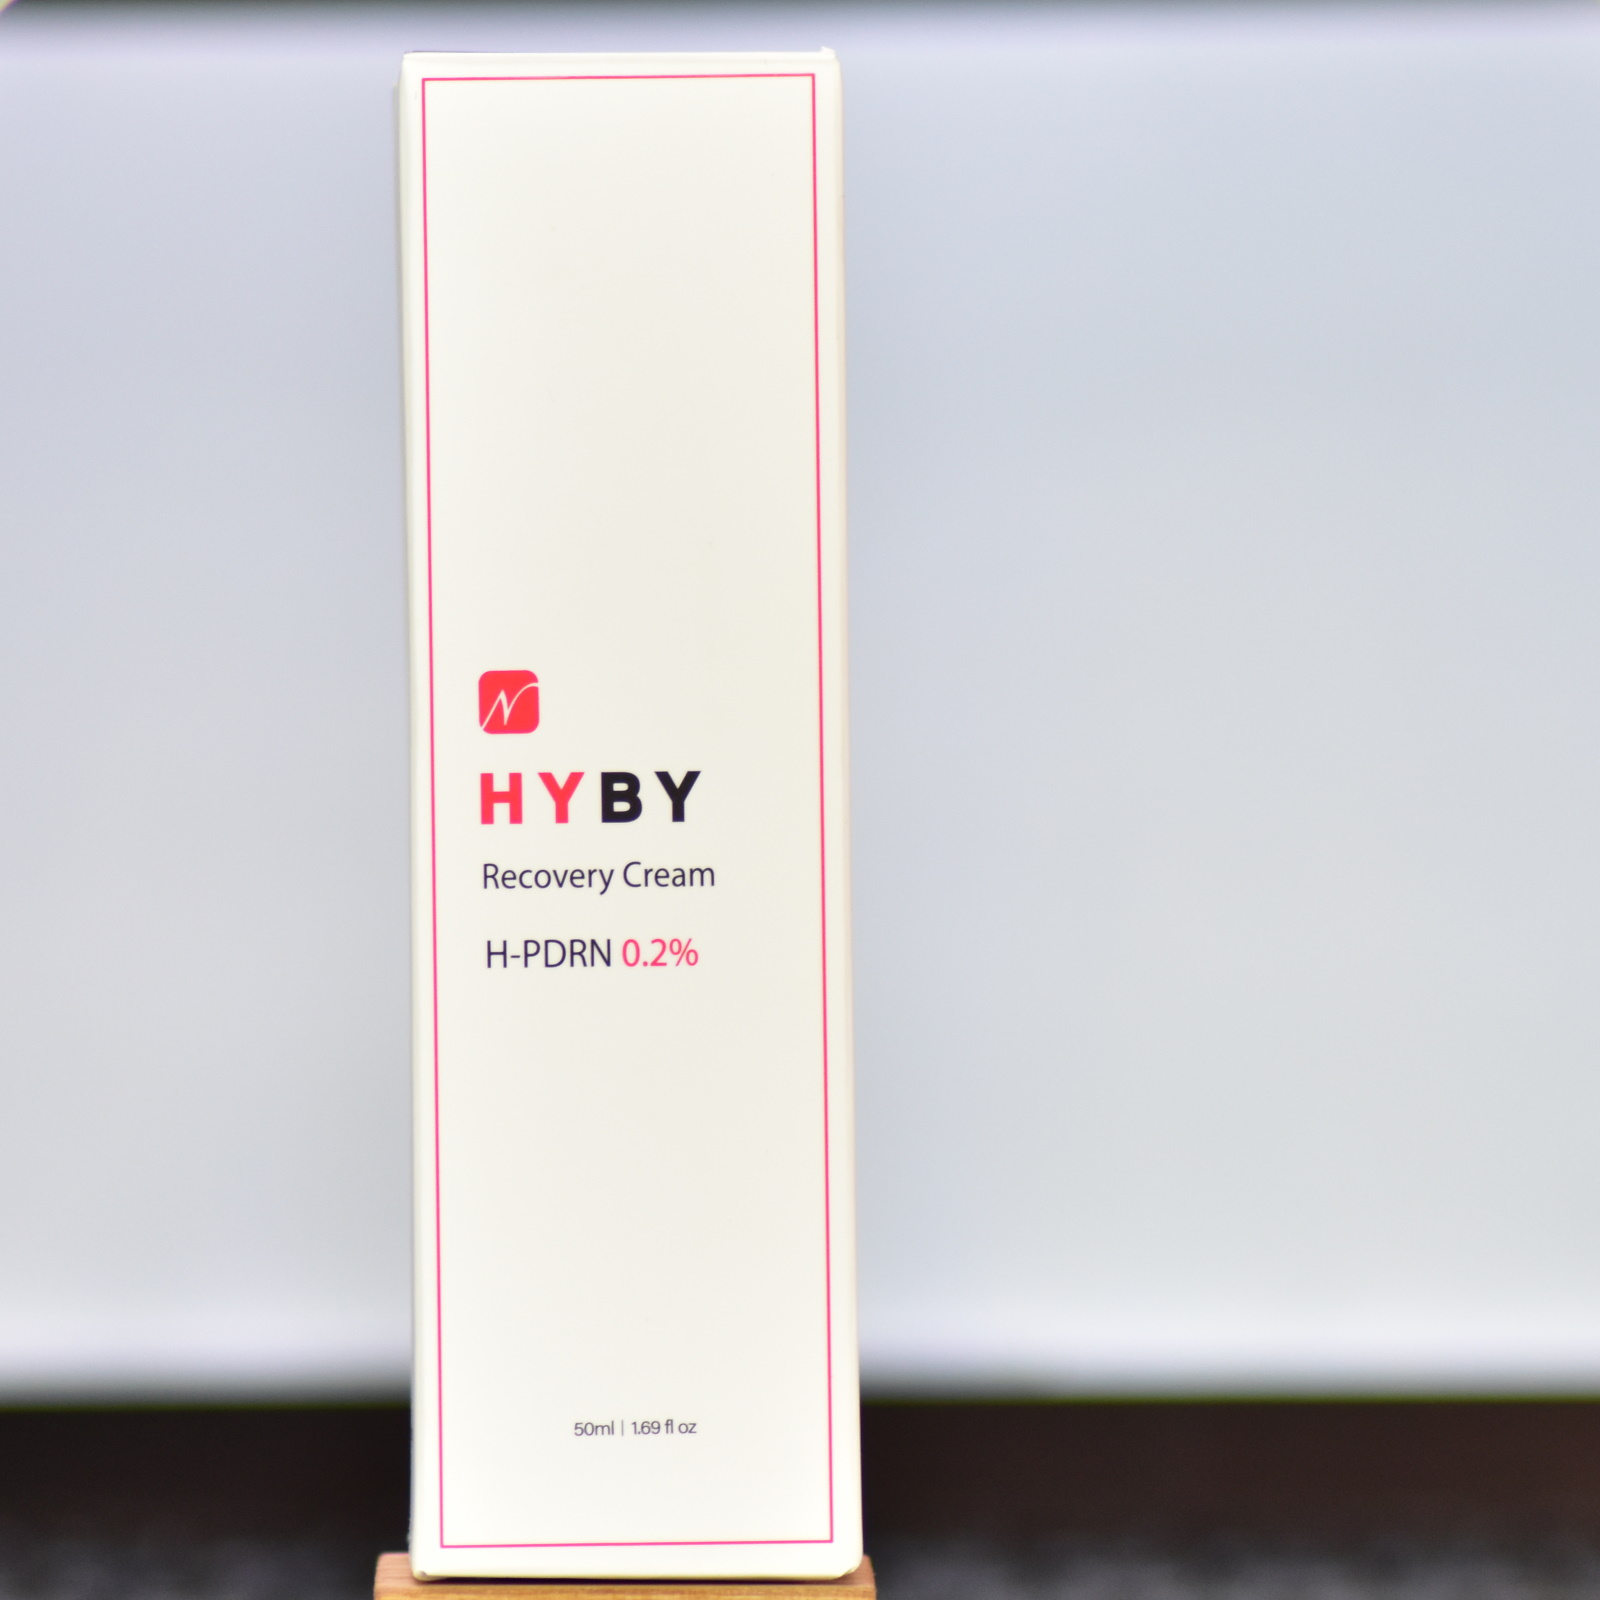 HYBY Recovery Cream по выгодной цене на StranaPrincess.com